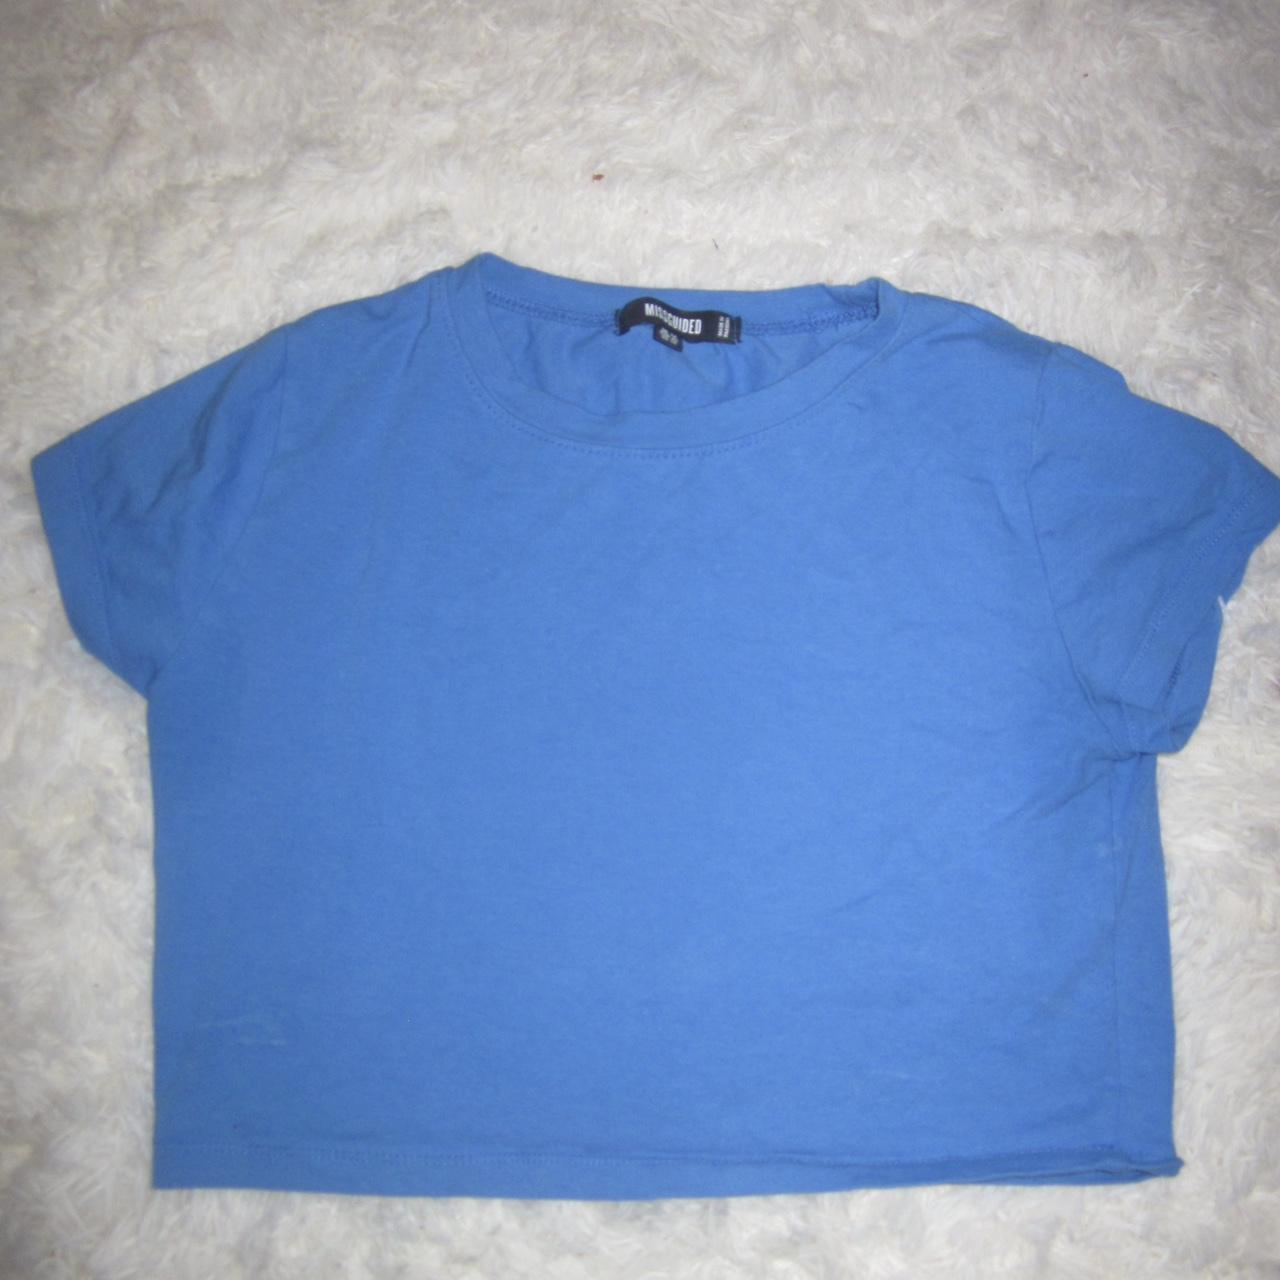 Misguided Blue Crop T-Shirt! #comfytee #t-shirt - Depop